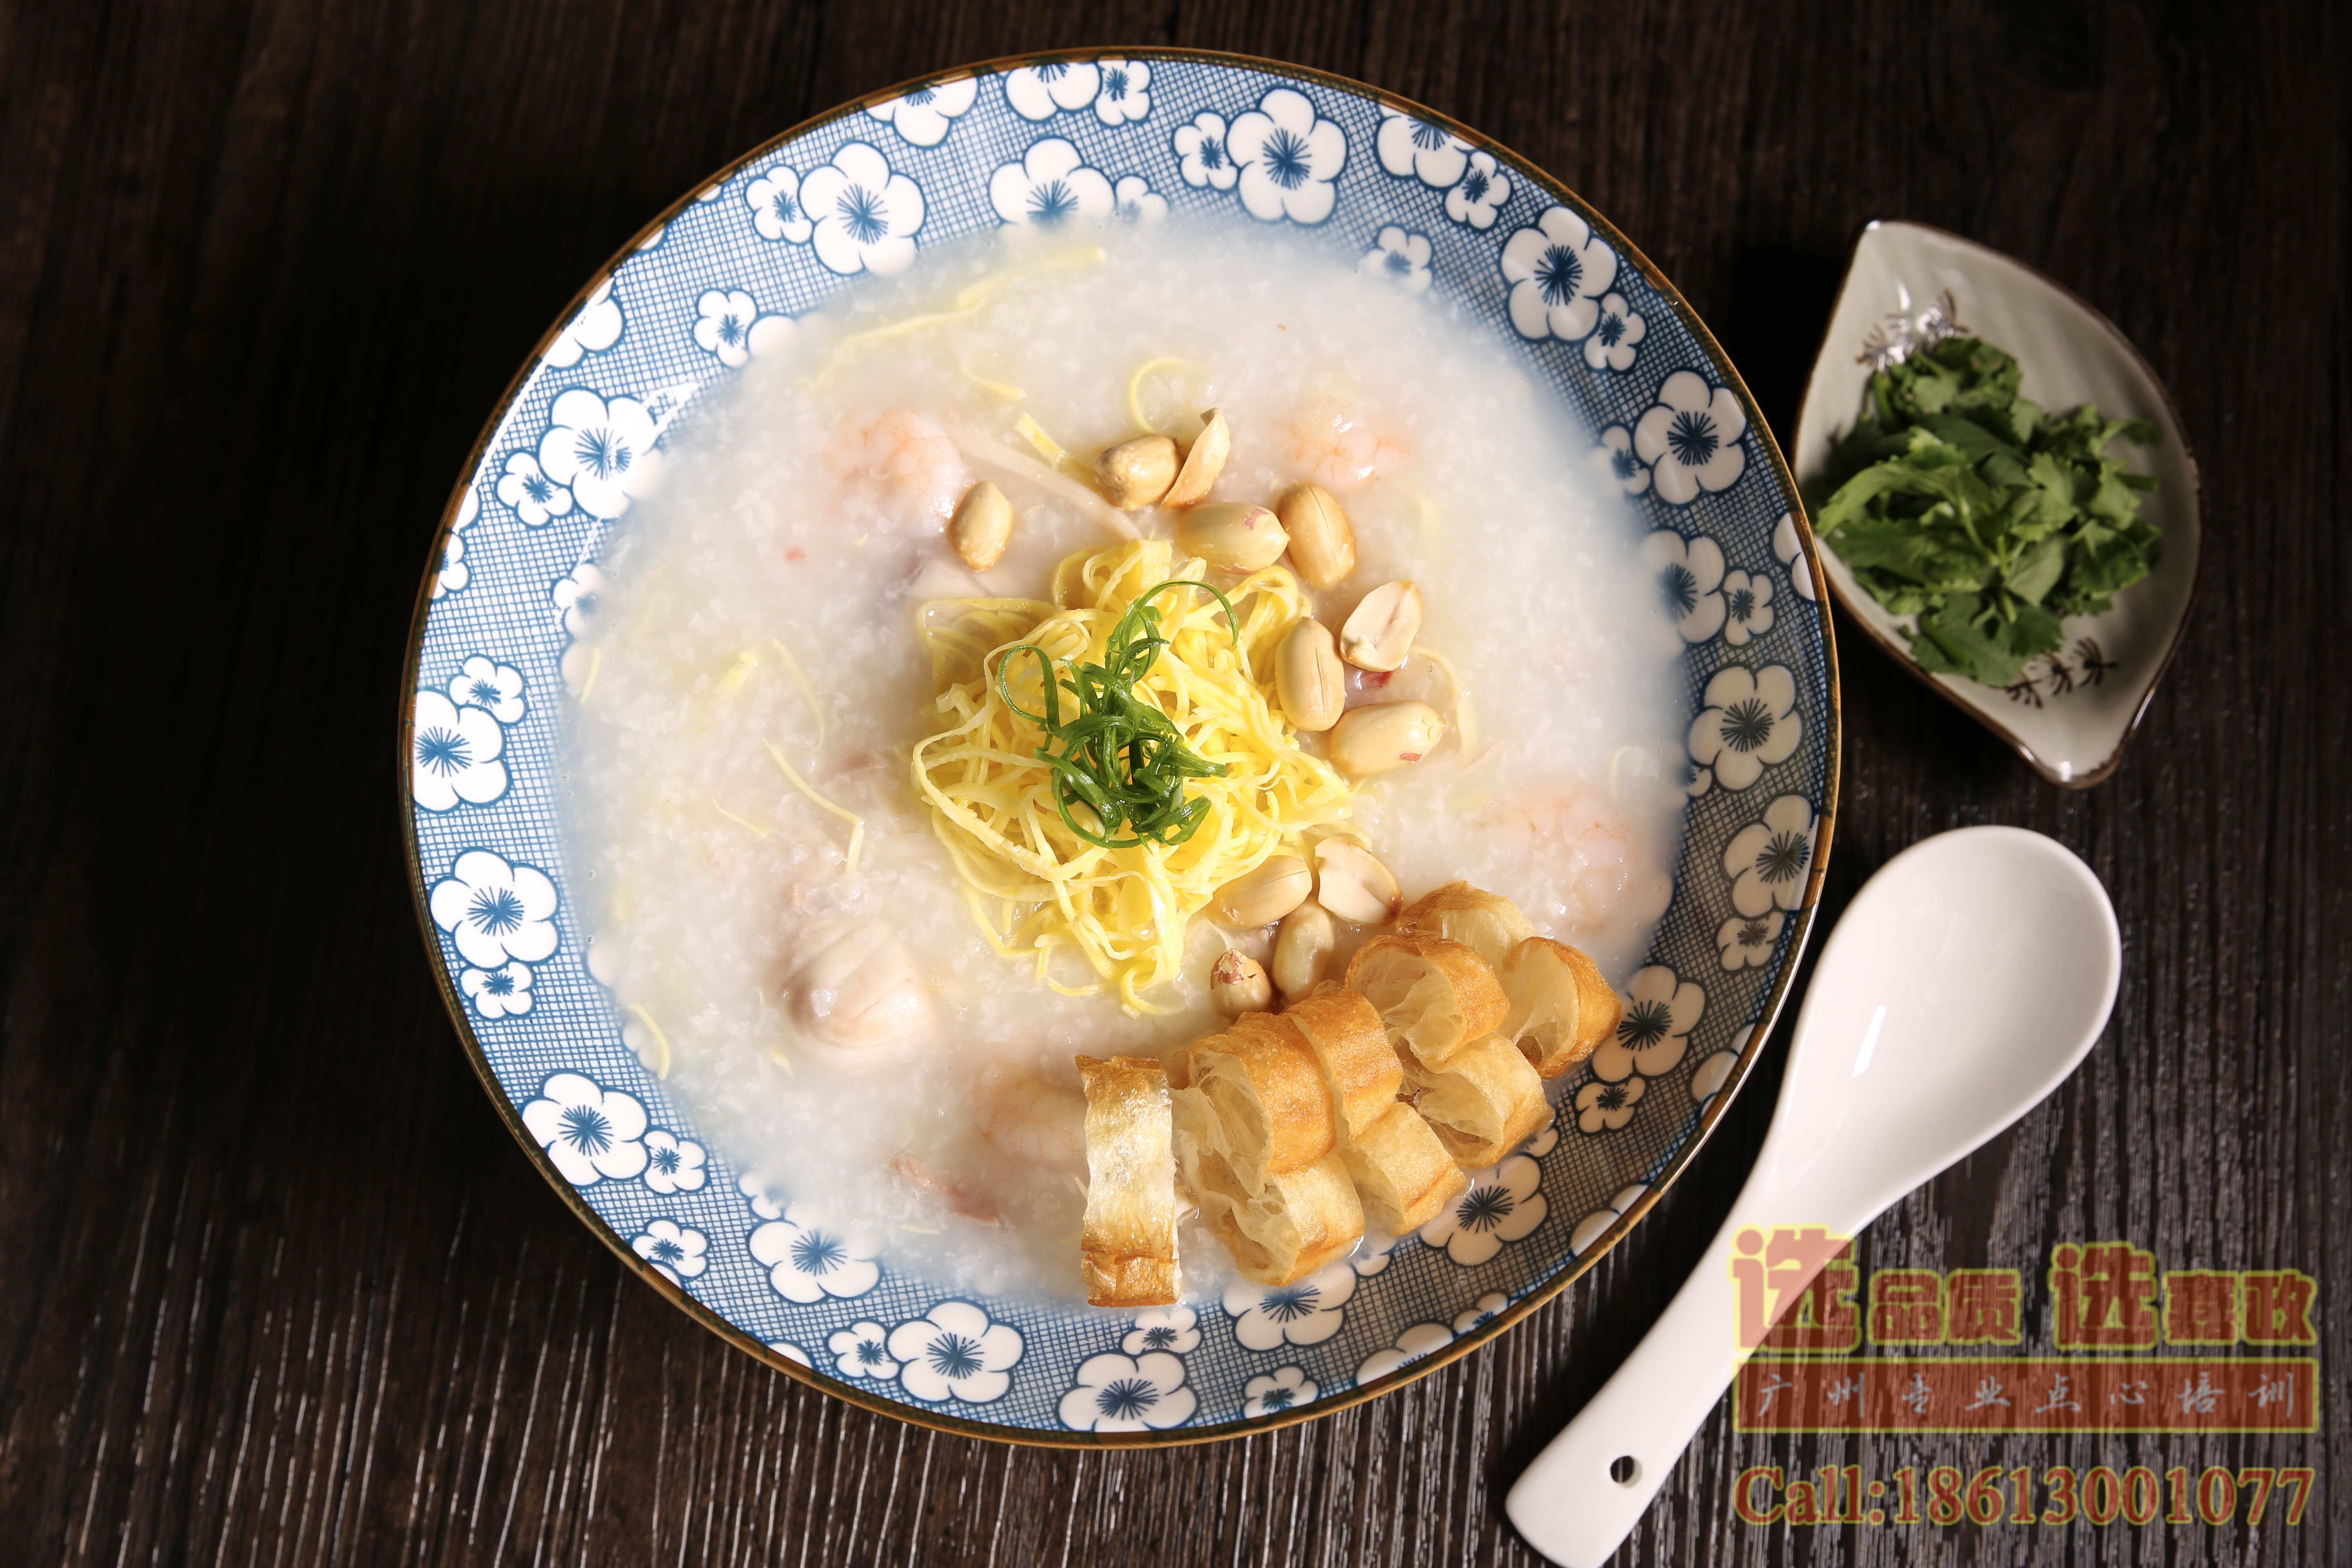 关于“十大岭南传统美食”中广州艇仔粥的由来与典故